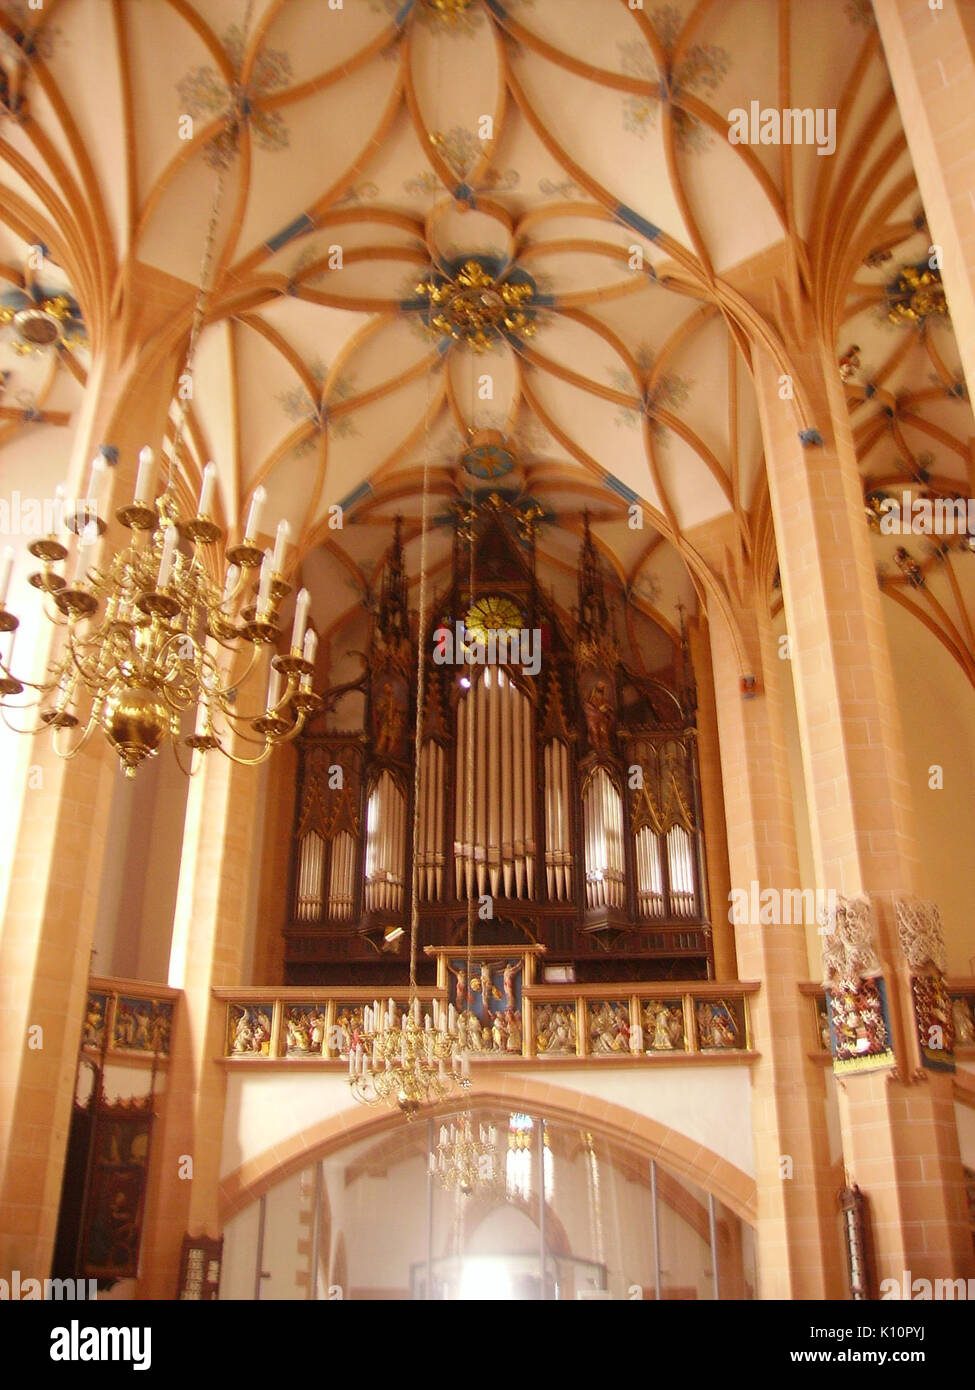 Annaberg Buchholz St. Annen Innen Orgel 1 Stock Photo